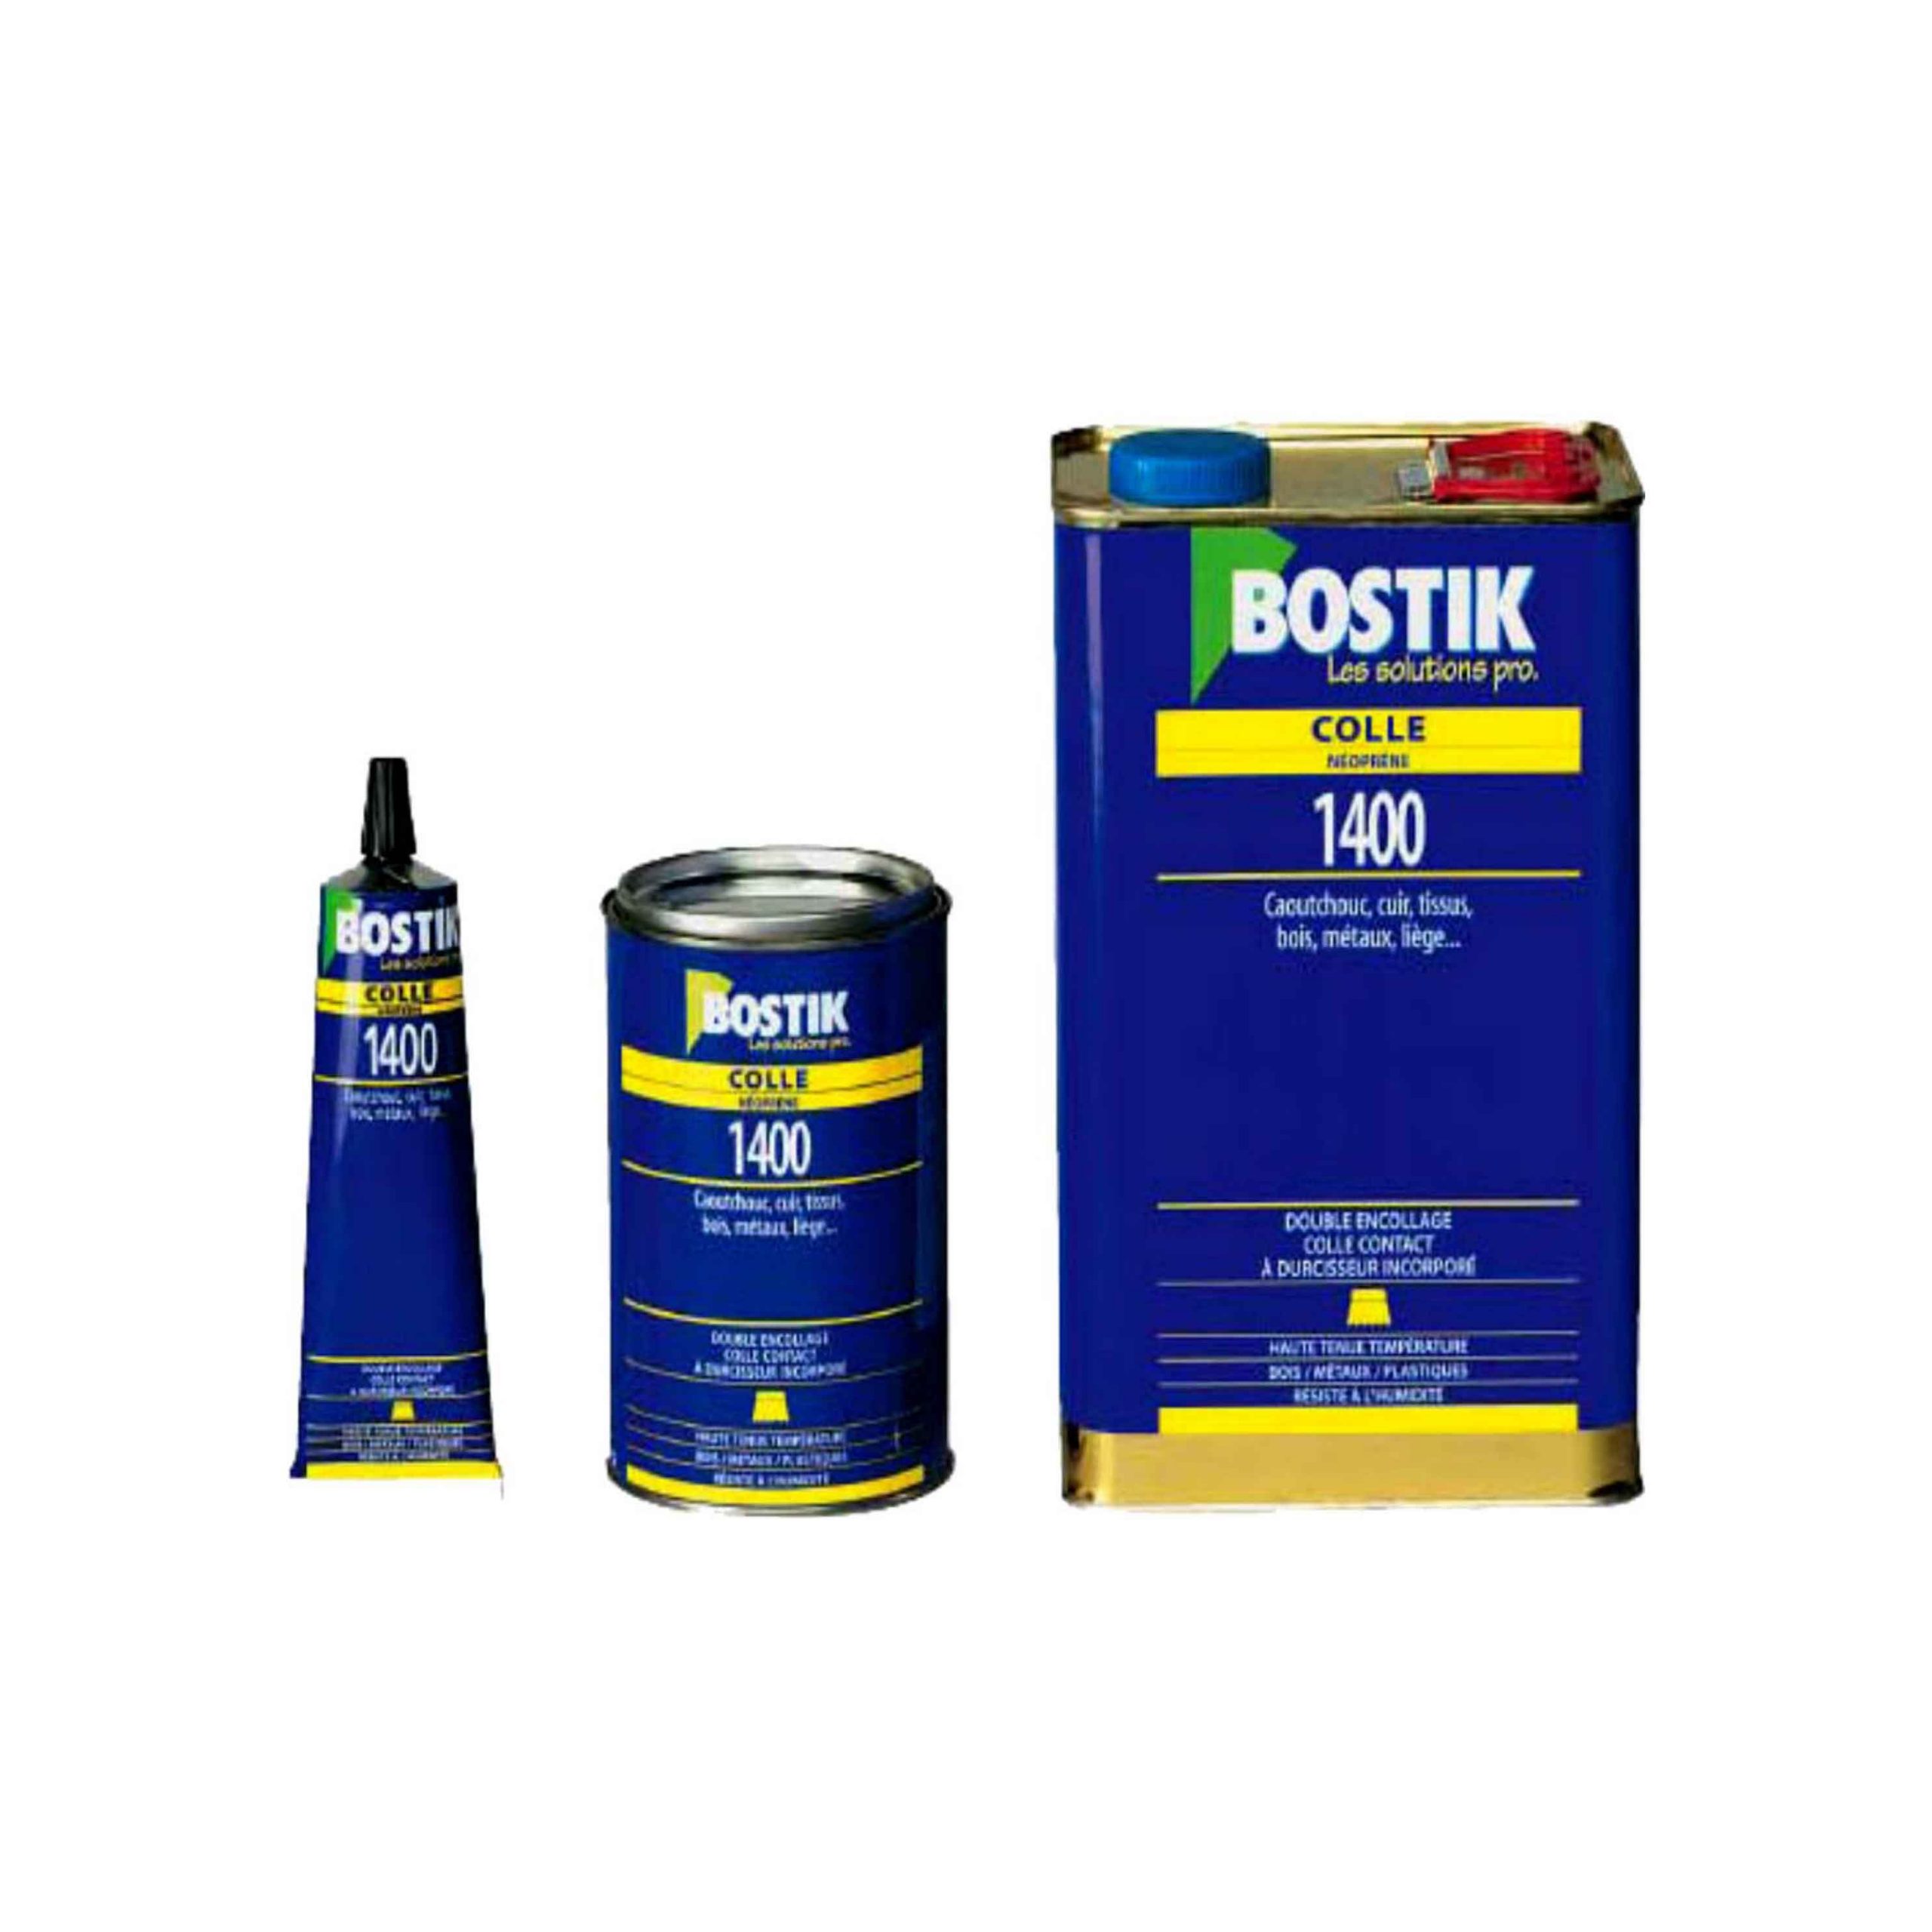 Bostik - Colles pour l'emballage - Sokkol